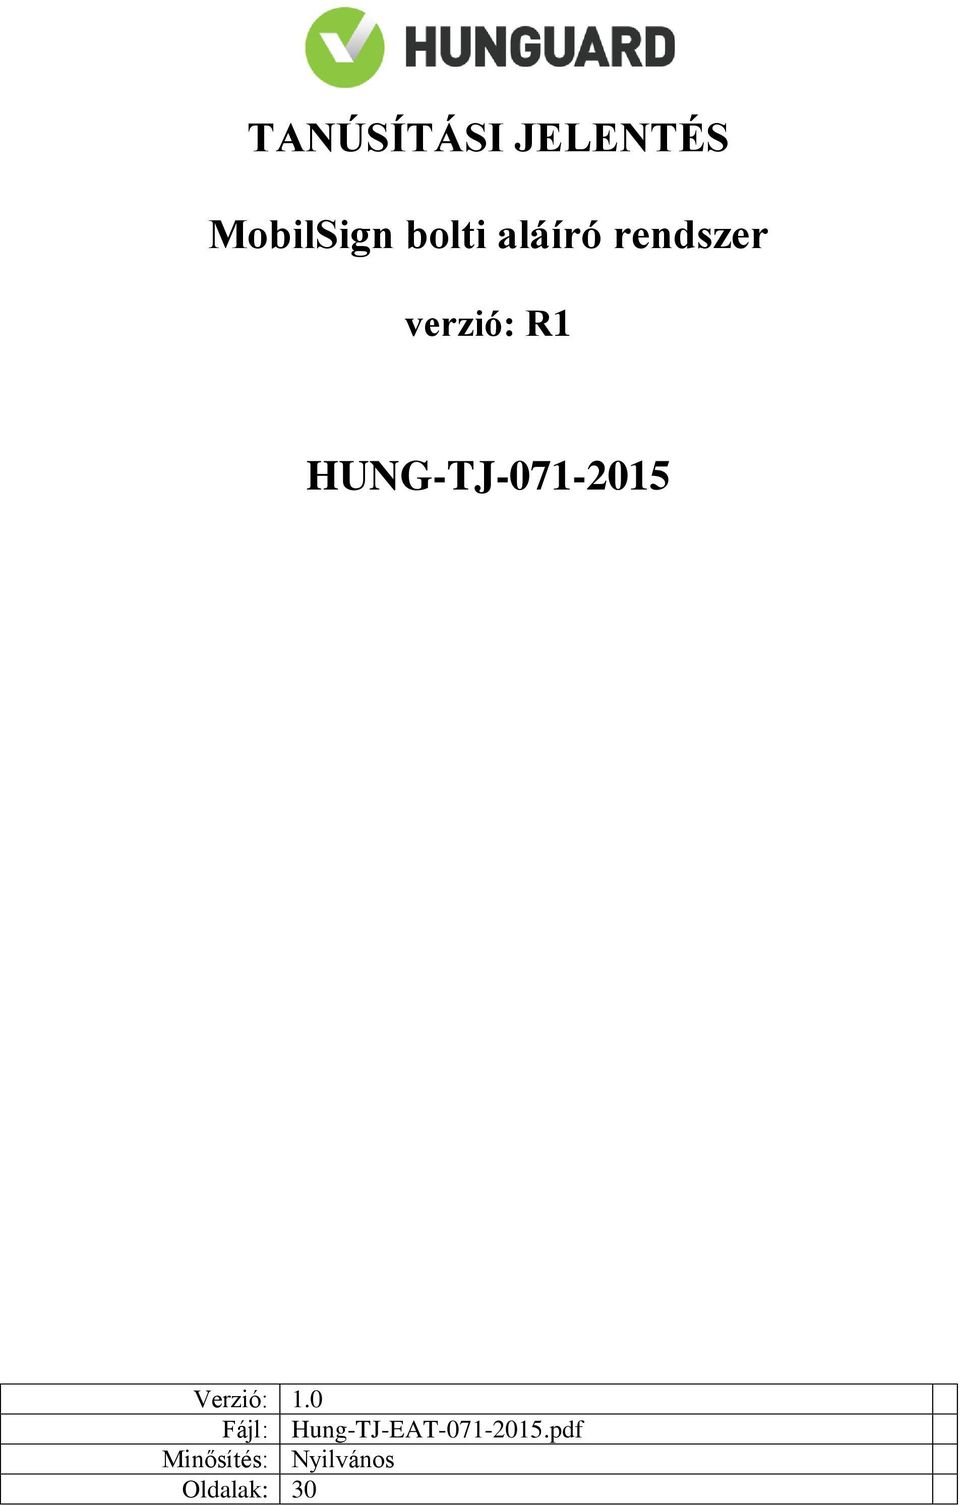 HUNG-TJ-071-2015 Verzió: 1.